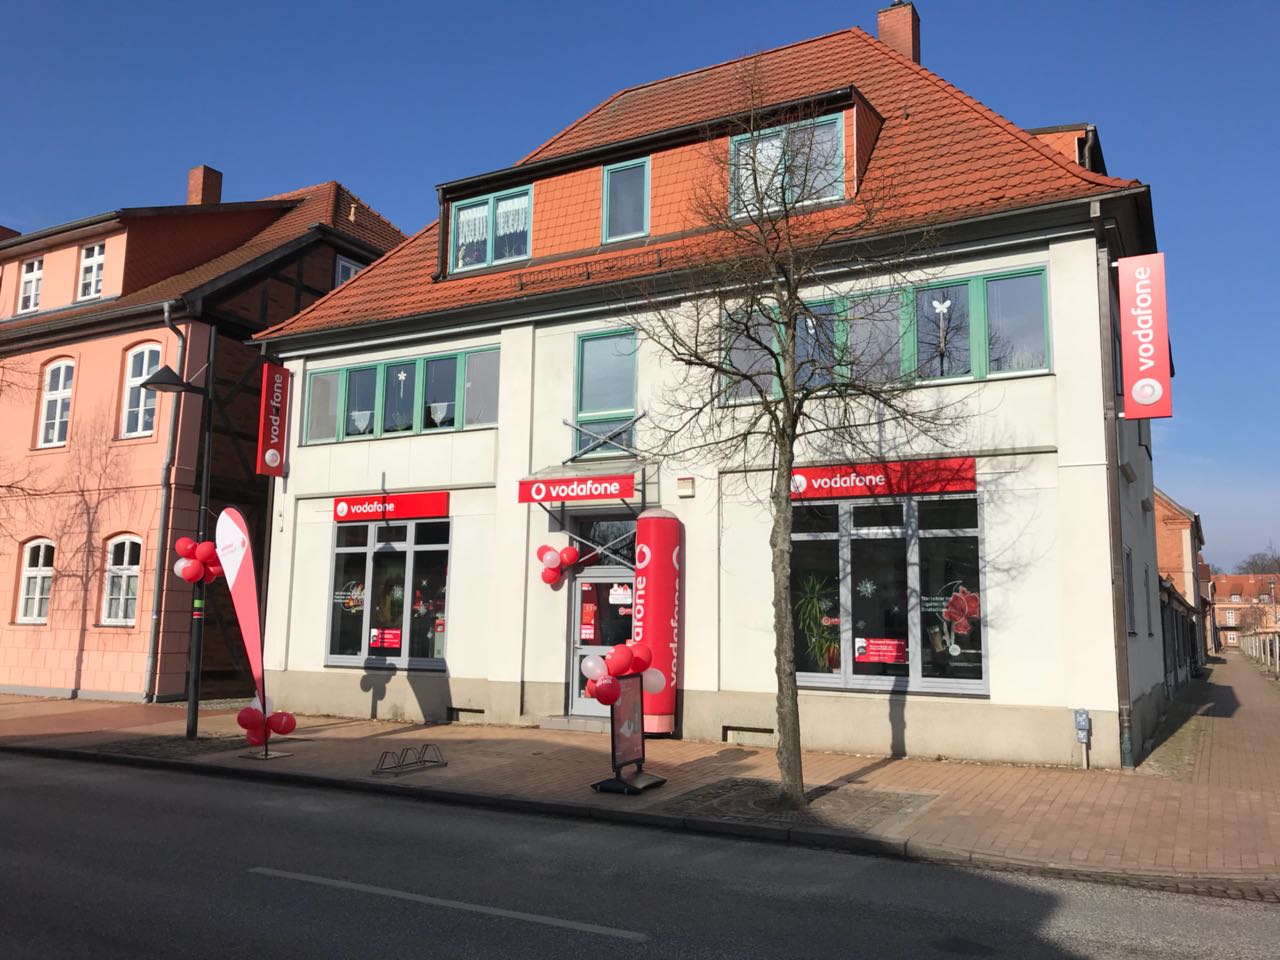 Vodafone-Shop in Ludwigslust, Nummerstr. 27